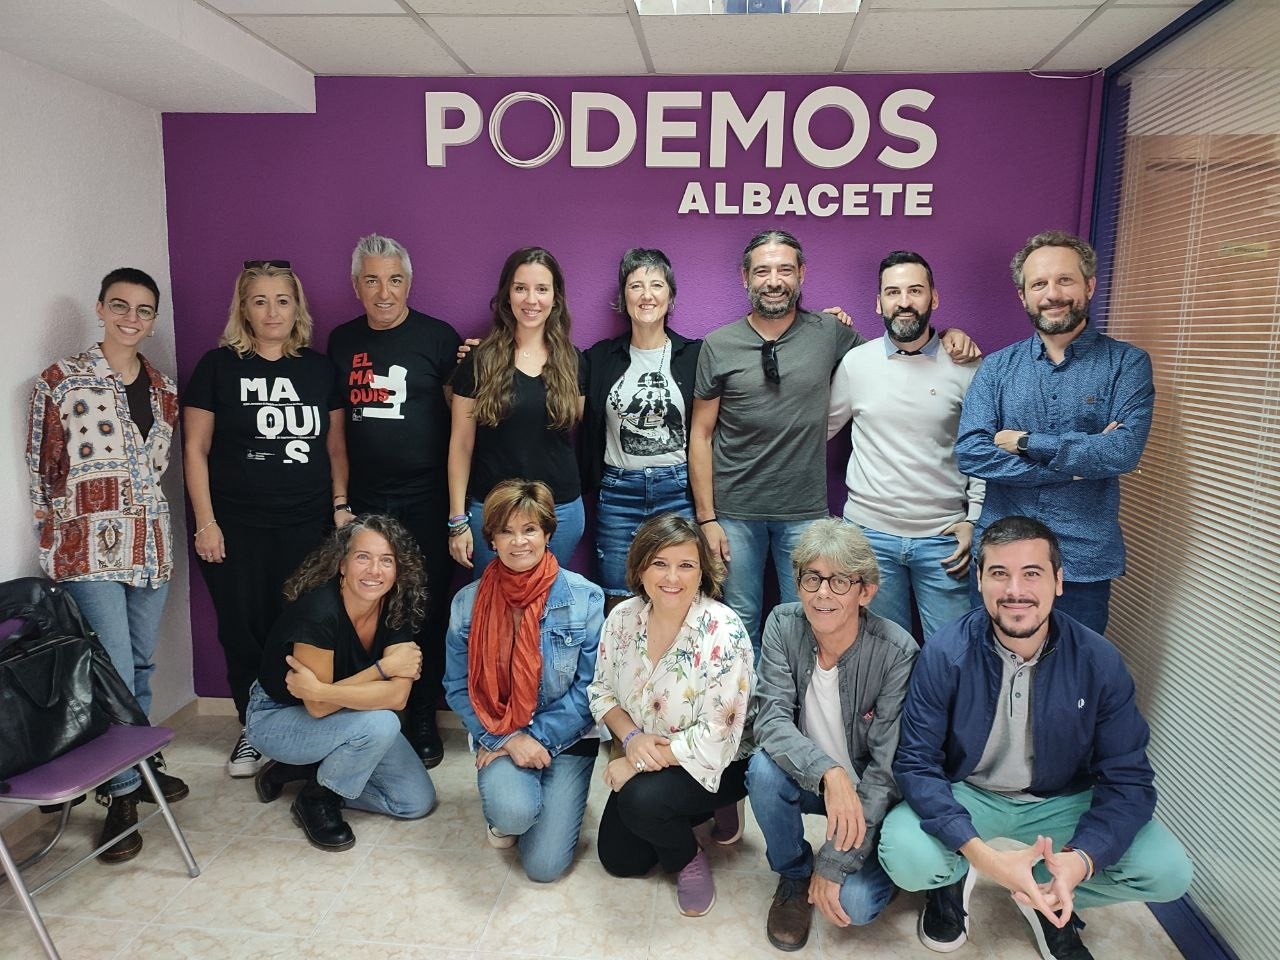 Podemos pide exhumar a Moscardó y Milans del Bosch del Alcázar de Toledo tras aprobarse la Ley de Memoria Democrática